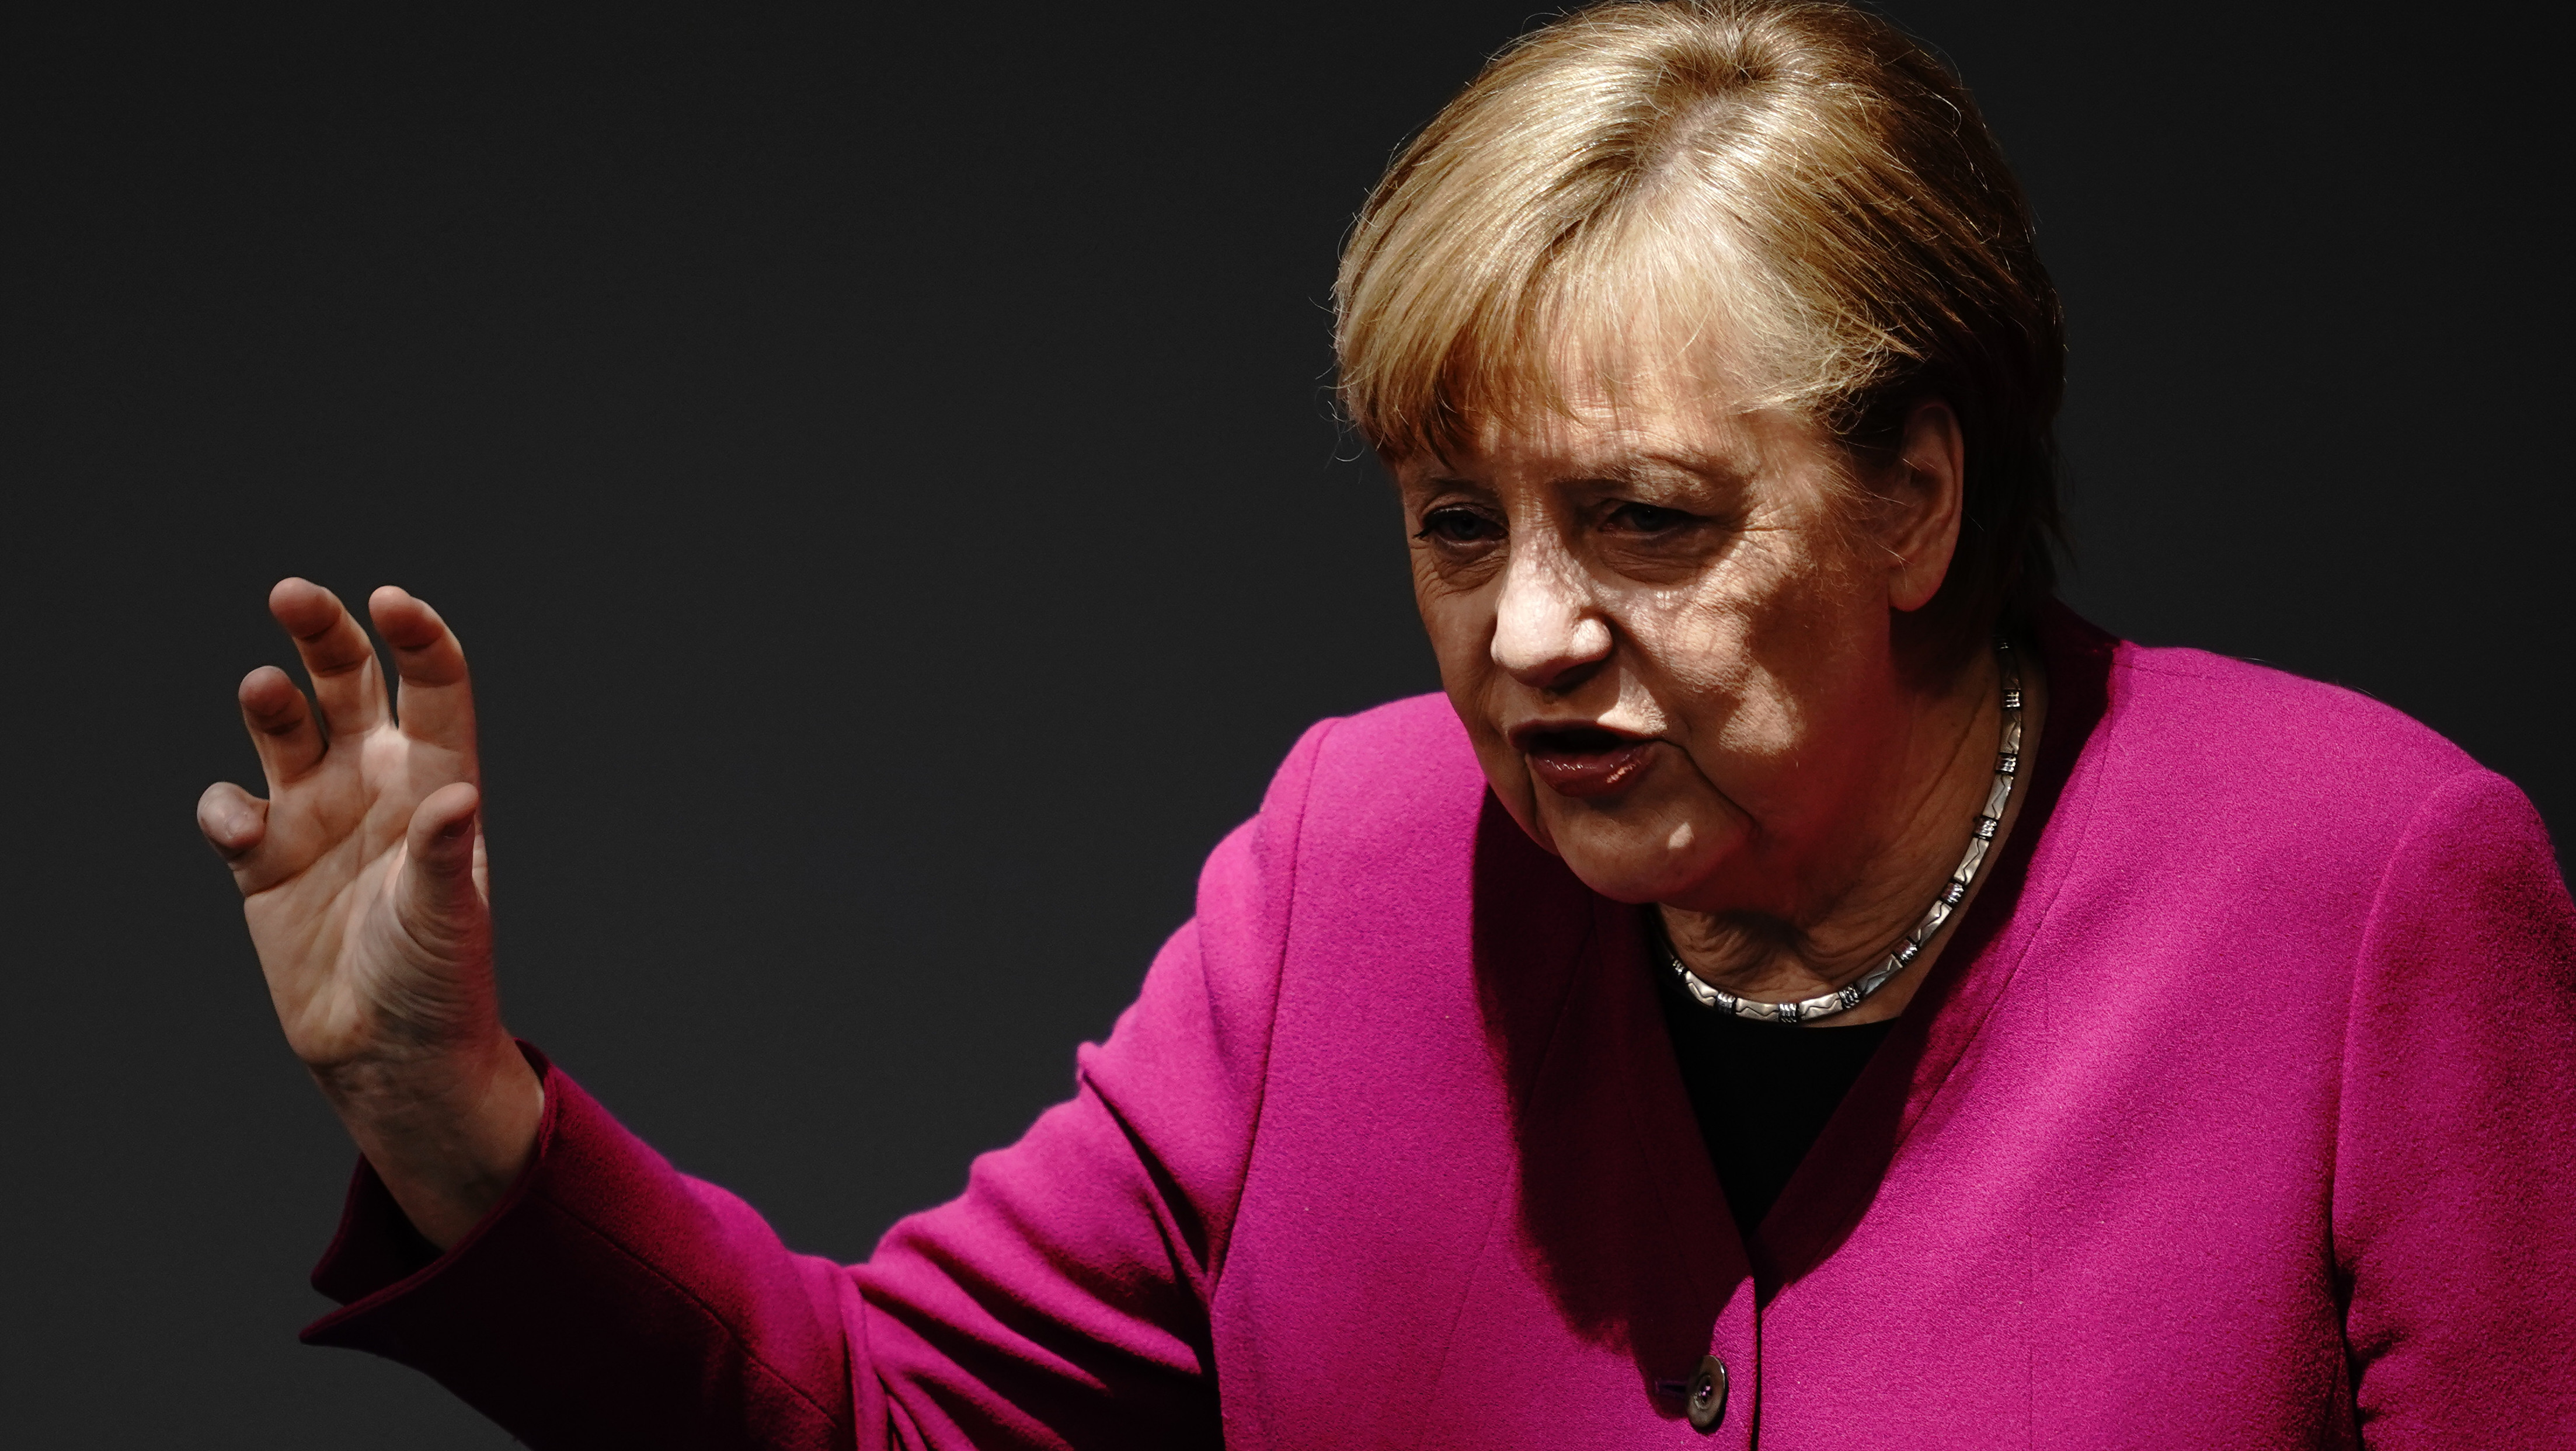 Alemania reclama a España los primeros ajustes fiscales para contener la deuda pública